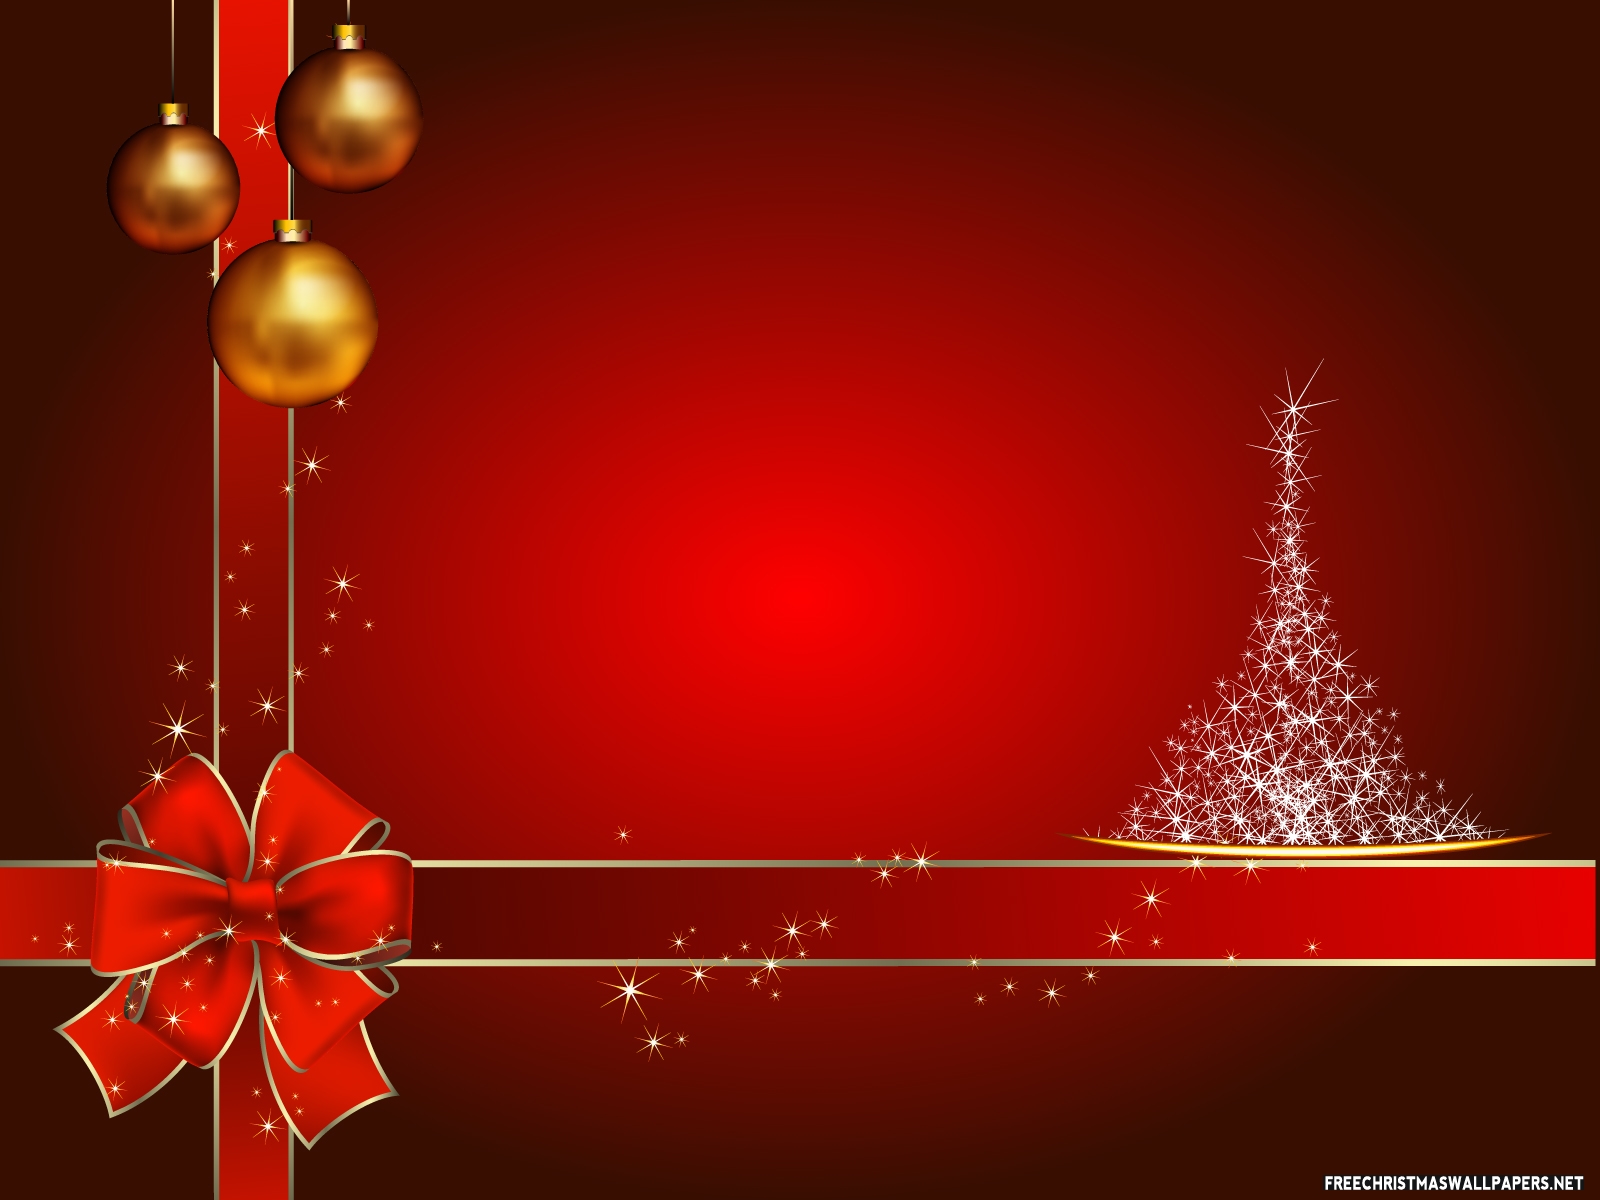 papel tapiz de regalo de navidad,rojo,decoración navideña,decoración navideña,árbol de navidad,nochebuena